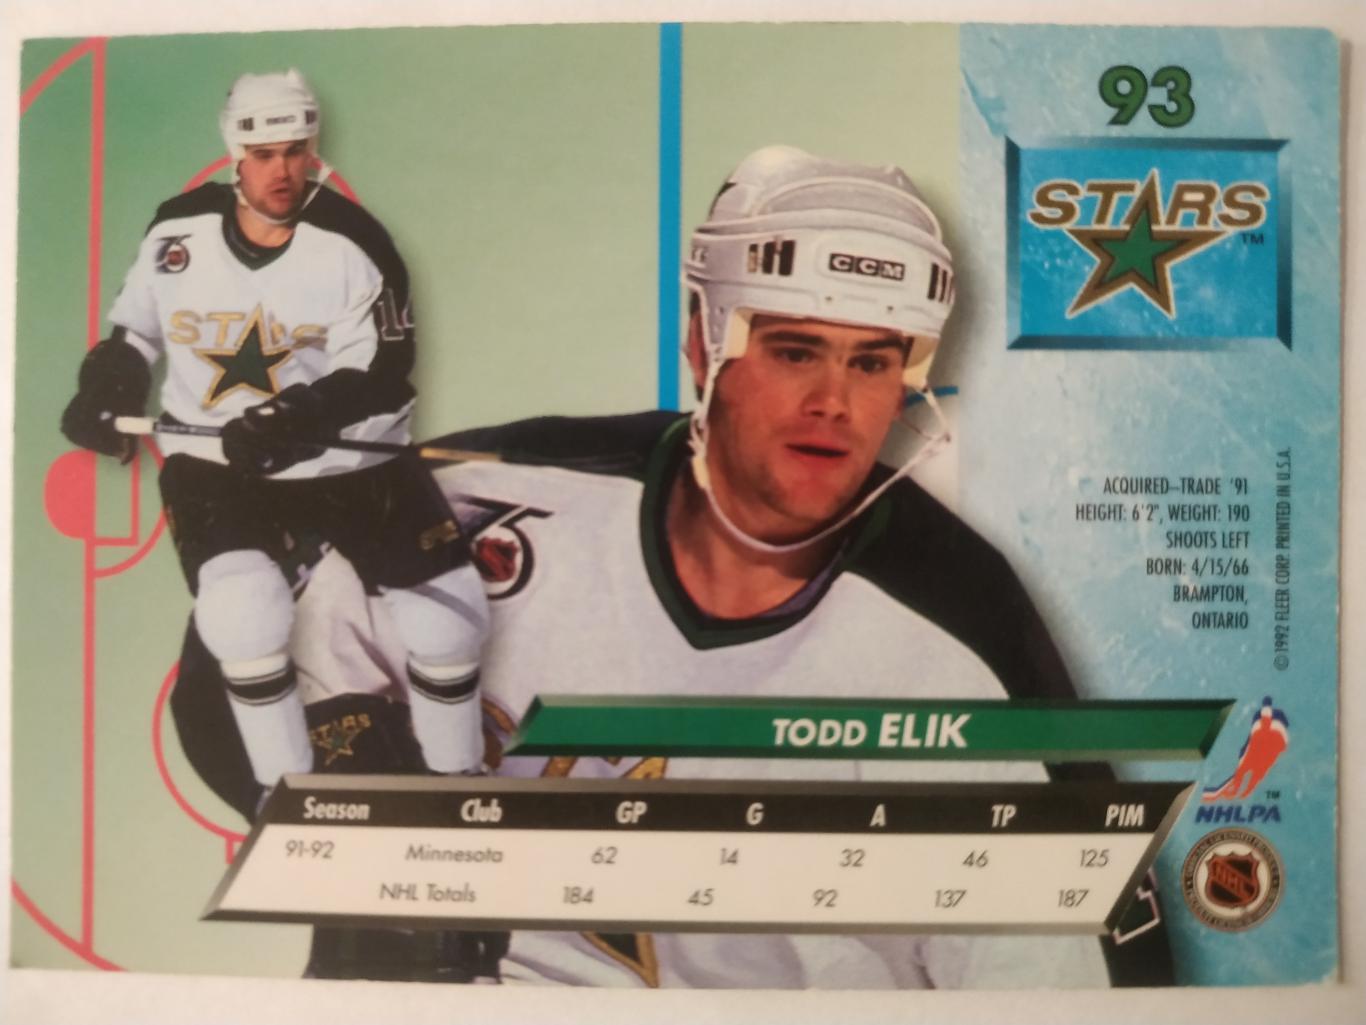 ХОККЕЙ КАРТОЧКА НХЛ FLEER ULTRA 1992-93 NHL TODD ELIK MINNESOTA #93 1